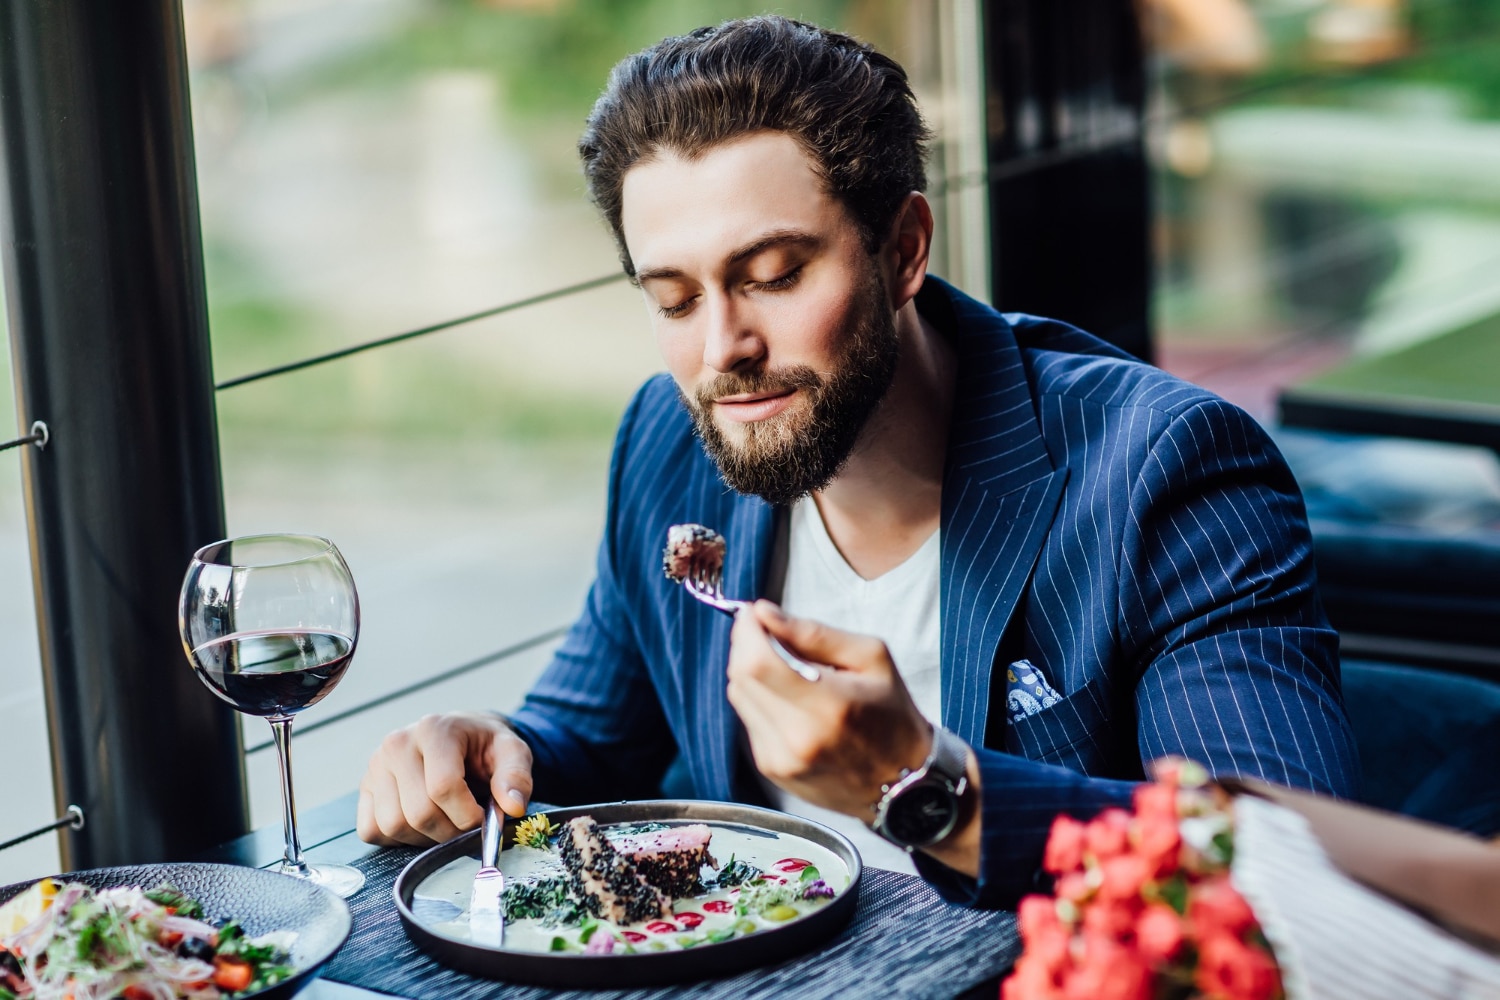 Man eating a salade at restaurant